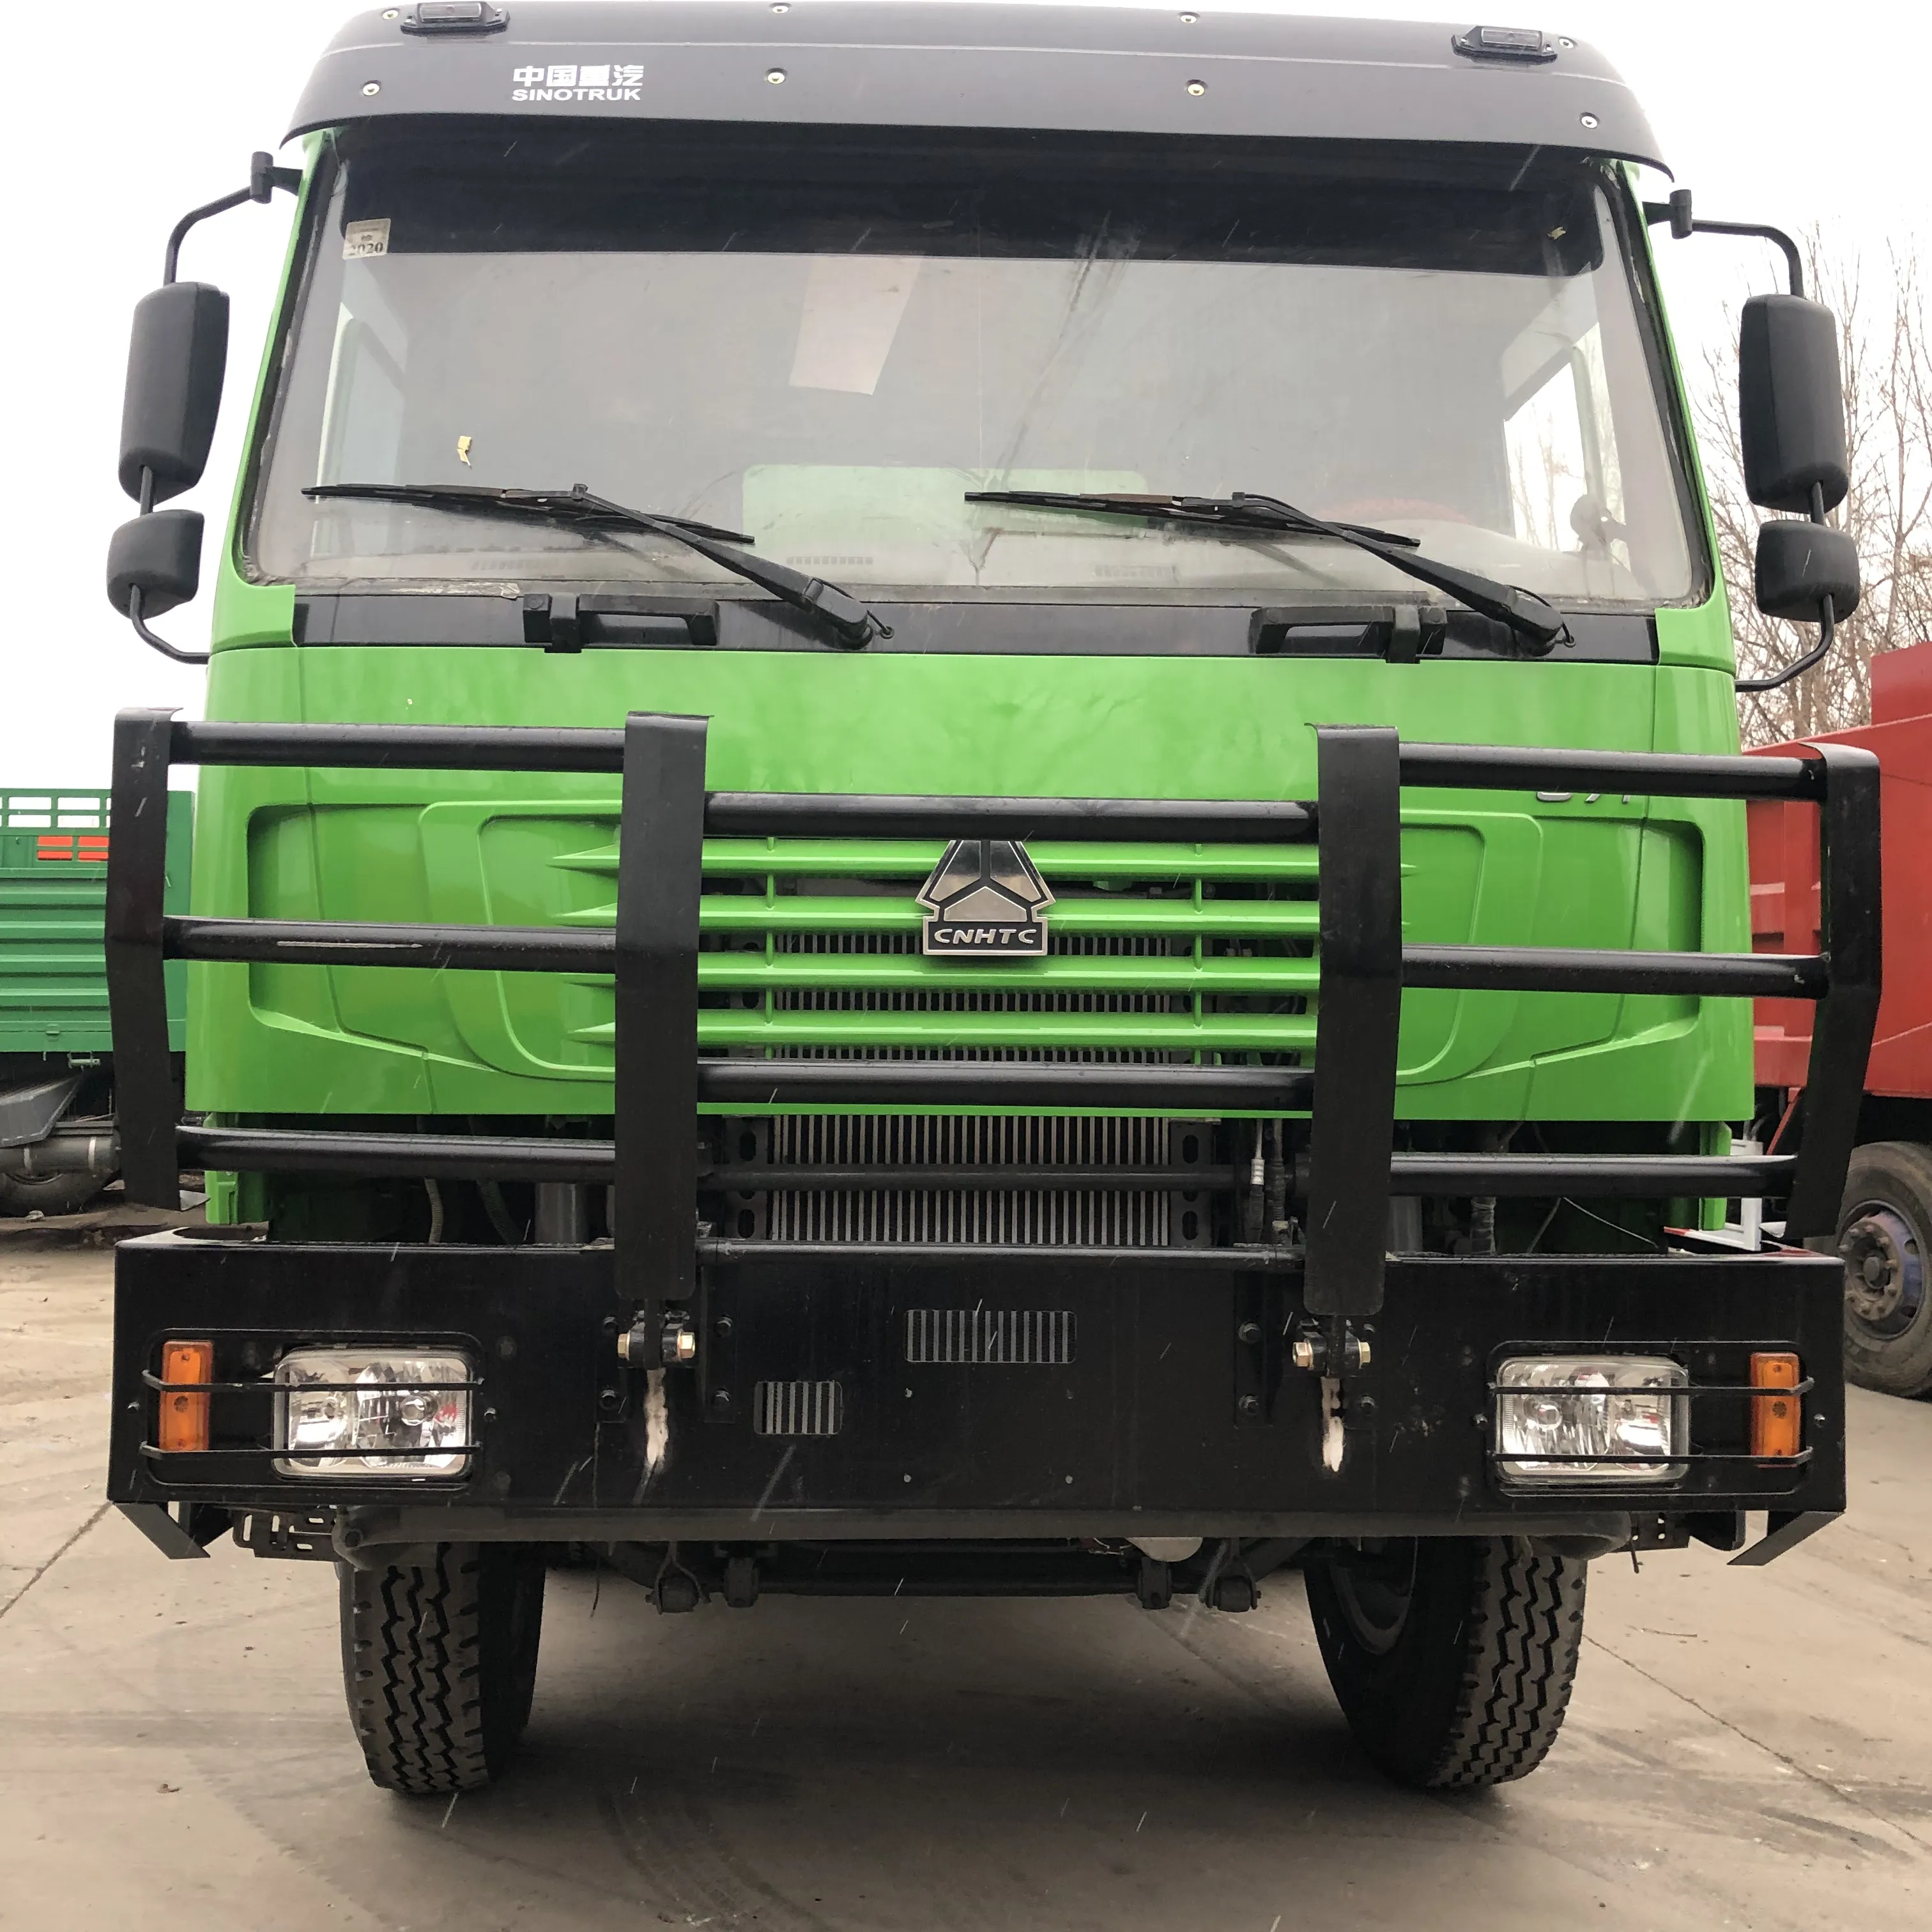 प्रयुक्त सिनोट्रक HOWO लाइट कार्गो बॉक्स ट्रक 371hp दूसरा ट्रक 12 टायरों के साथ यूरो2 कम कीमत और उत्कृष्ट स्थिति चीन में निर्मित